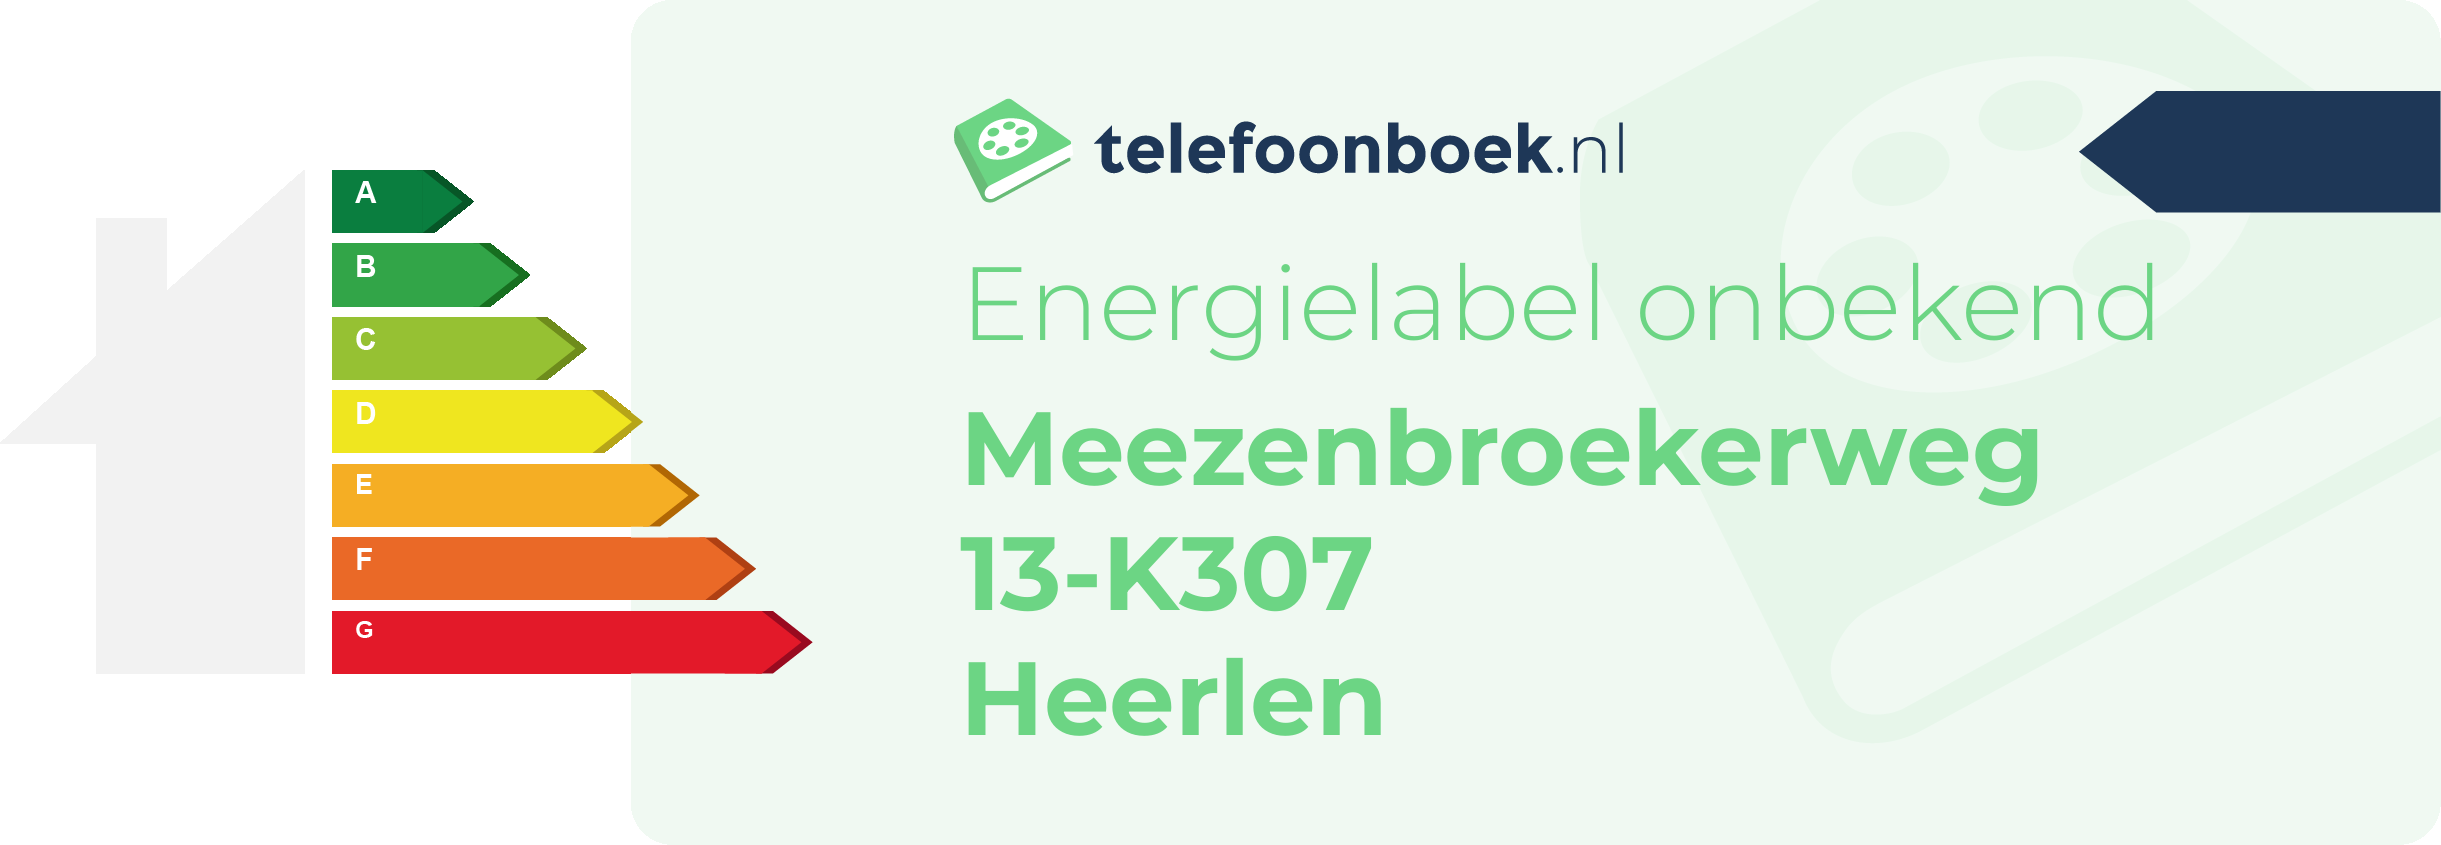 Energielabel Meezenbroekerweg 13-K307 Heerlen